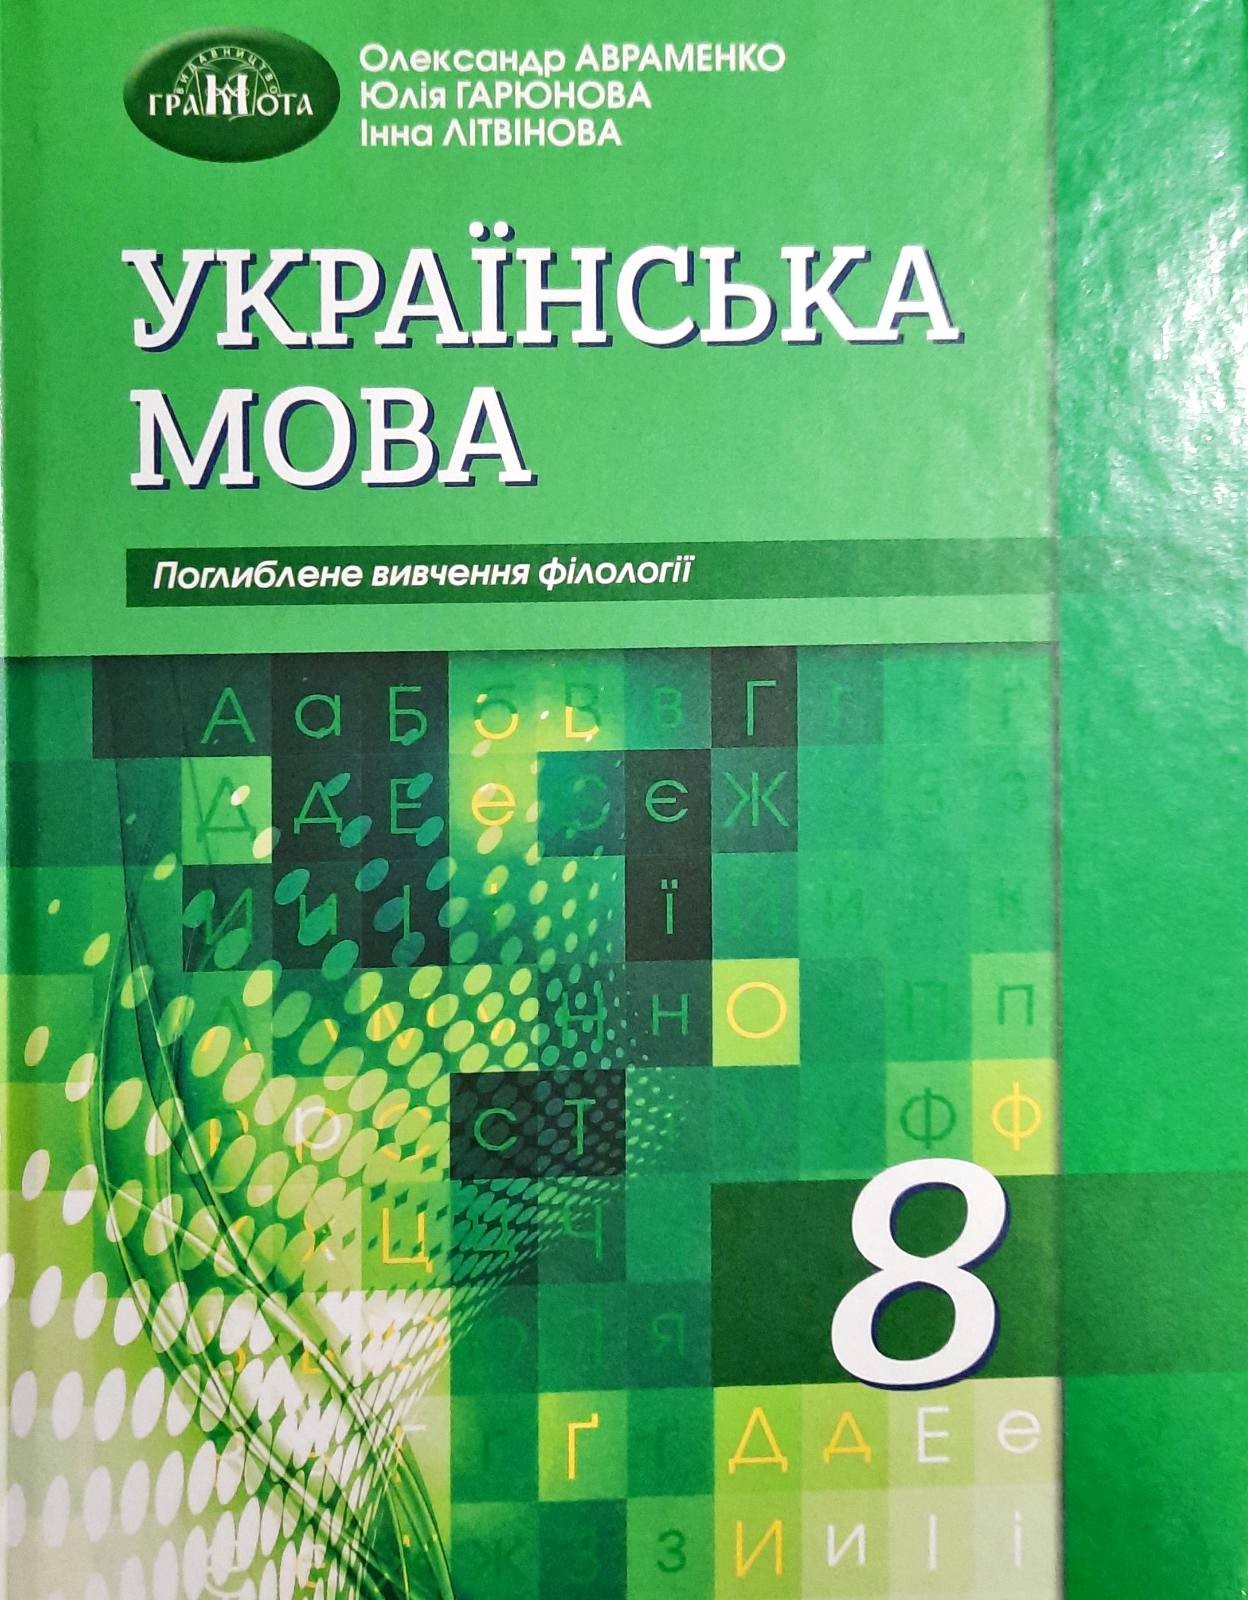 Авраменко 8 клас Українська мова Підручник (поглиблене вивчення філології)